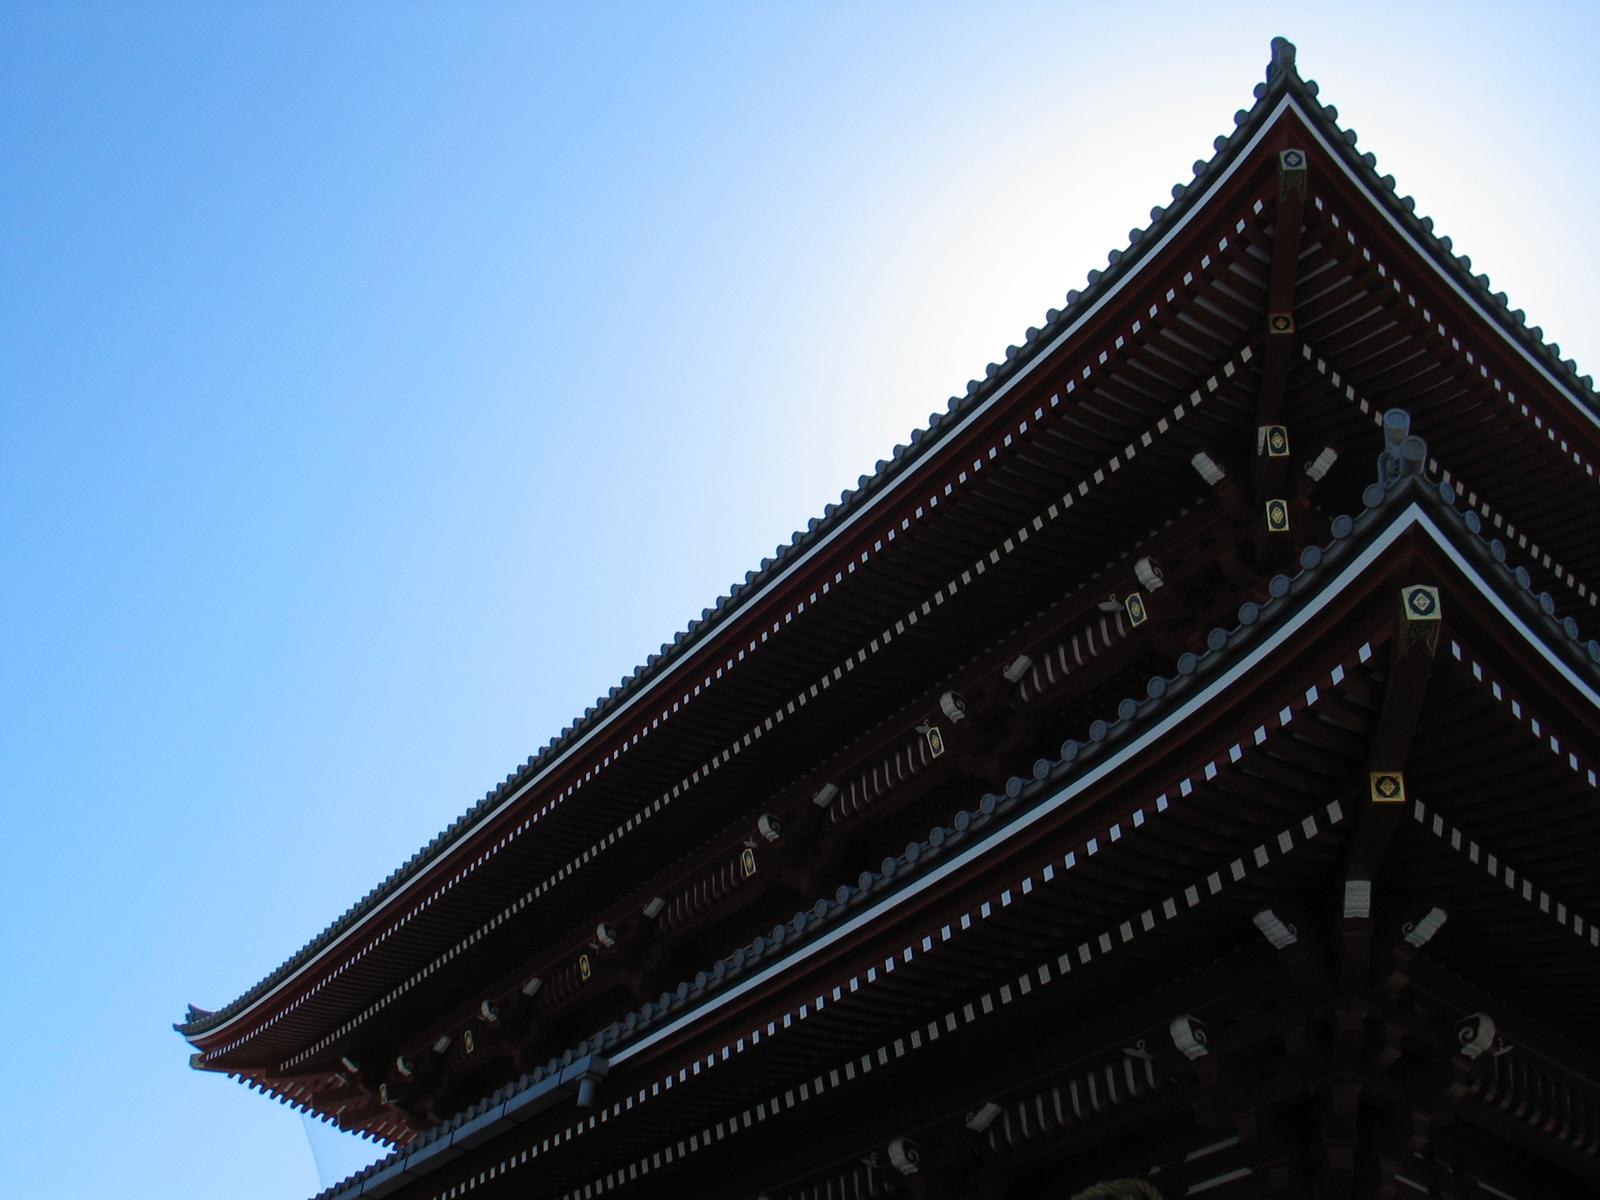 The Asakusa pagoda